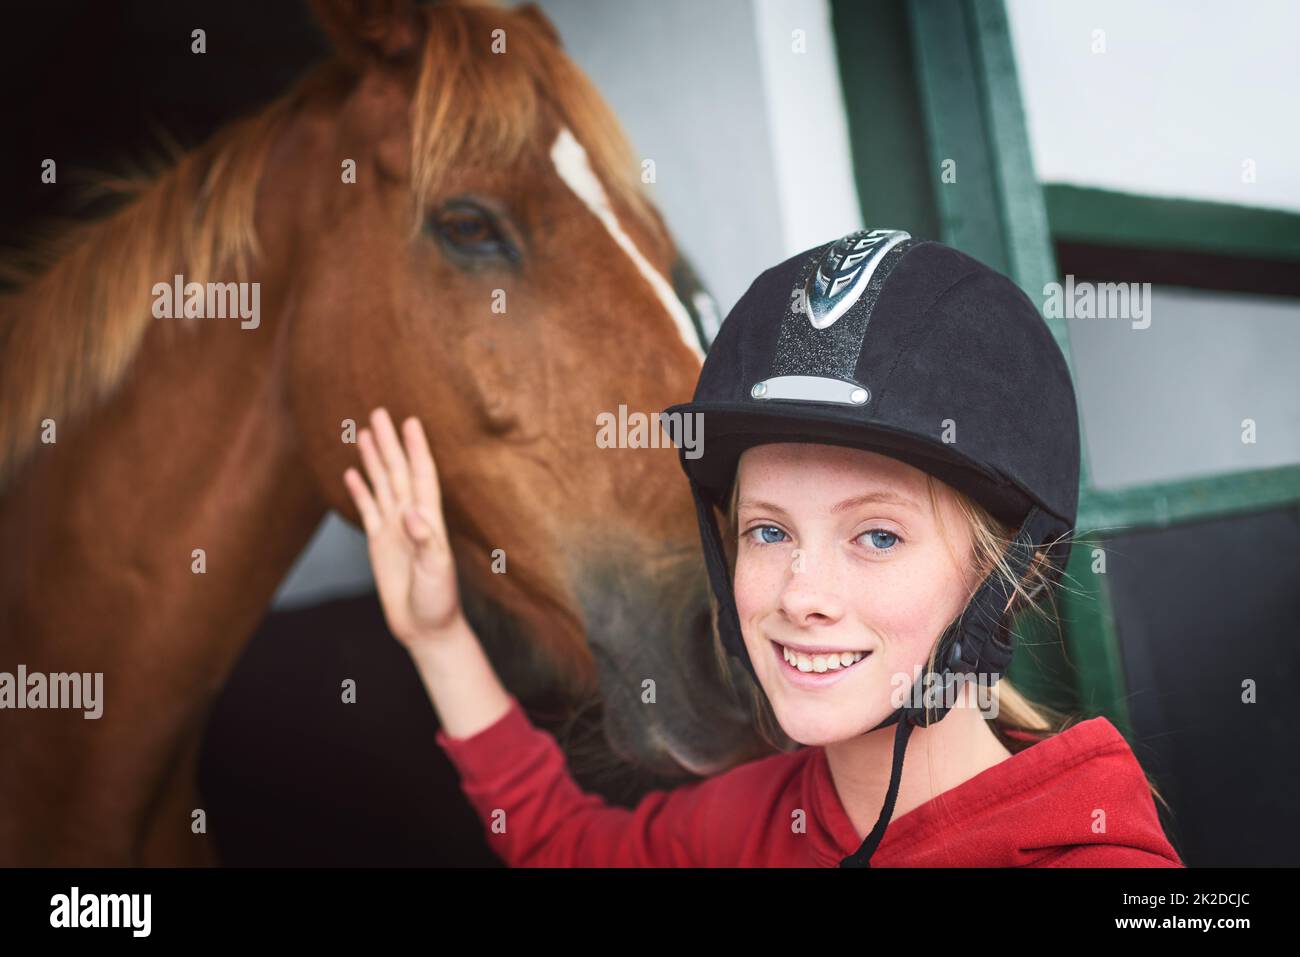 Mein glücklicher Platz ist in den Ställen. Aufnahme eines Teenagers, das sich mit ihrem Pferd anklebte. Stockfoto